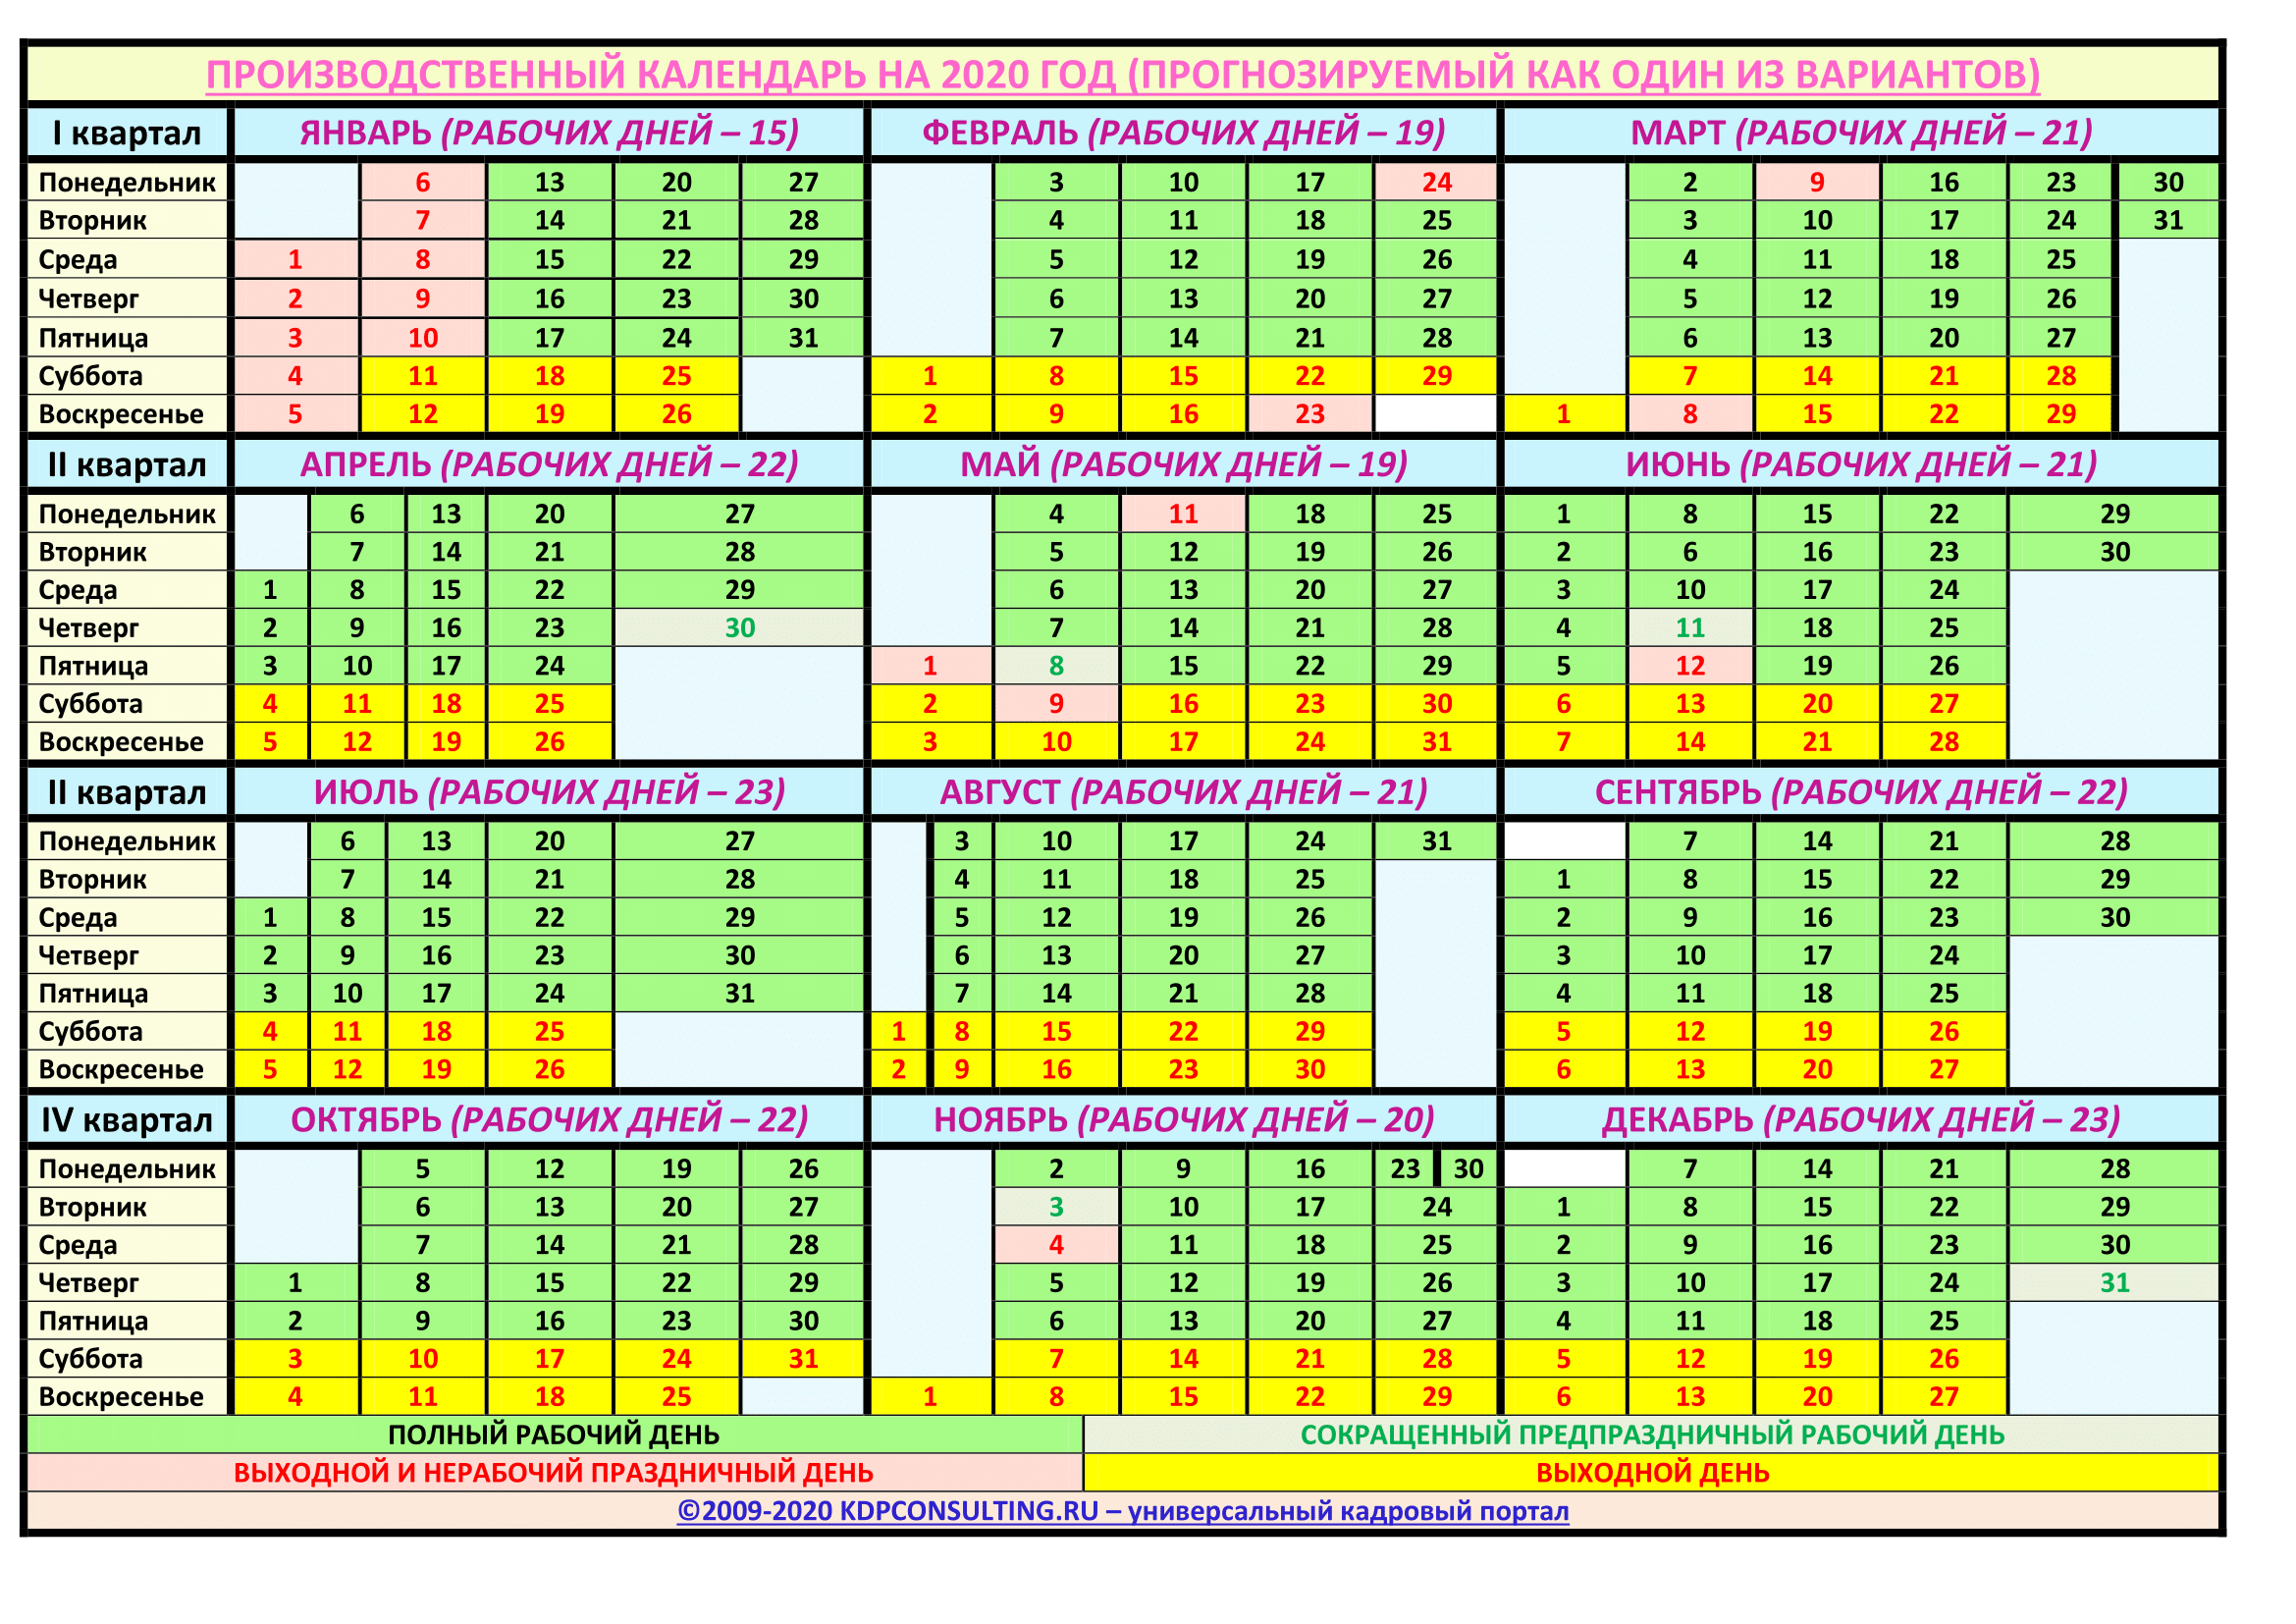 Сколько полных недель в 1 году. календарный год — это какой период по закону? сколько недель учитывается в течение одного календарного года